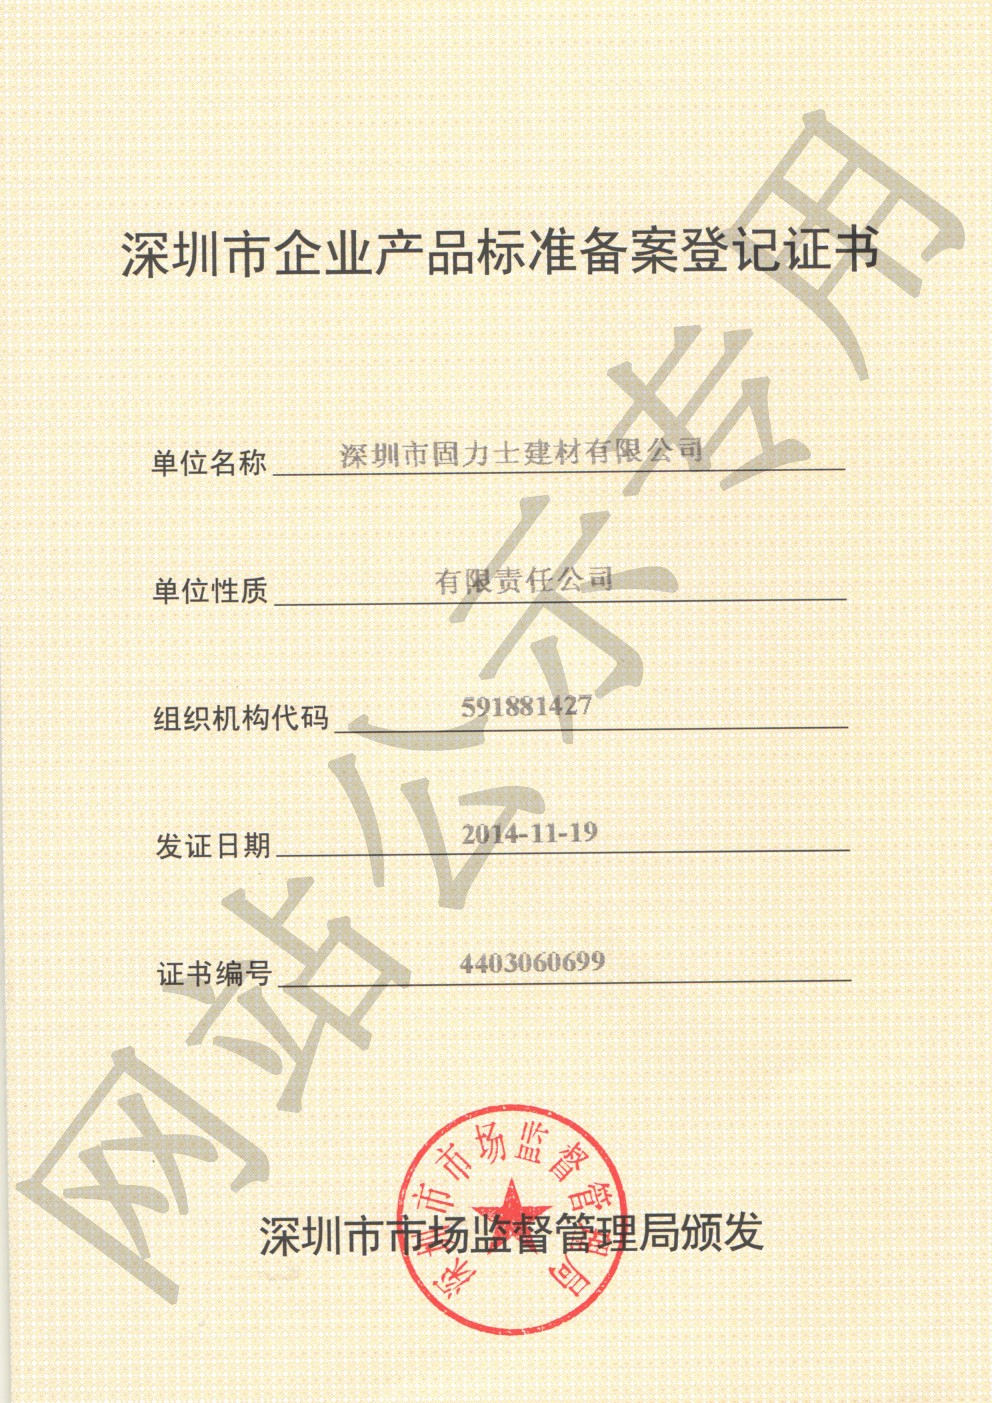 晴隆企业产品标准登记证书